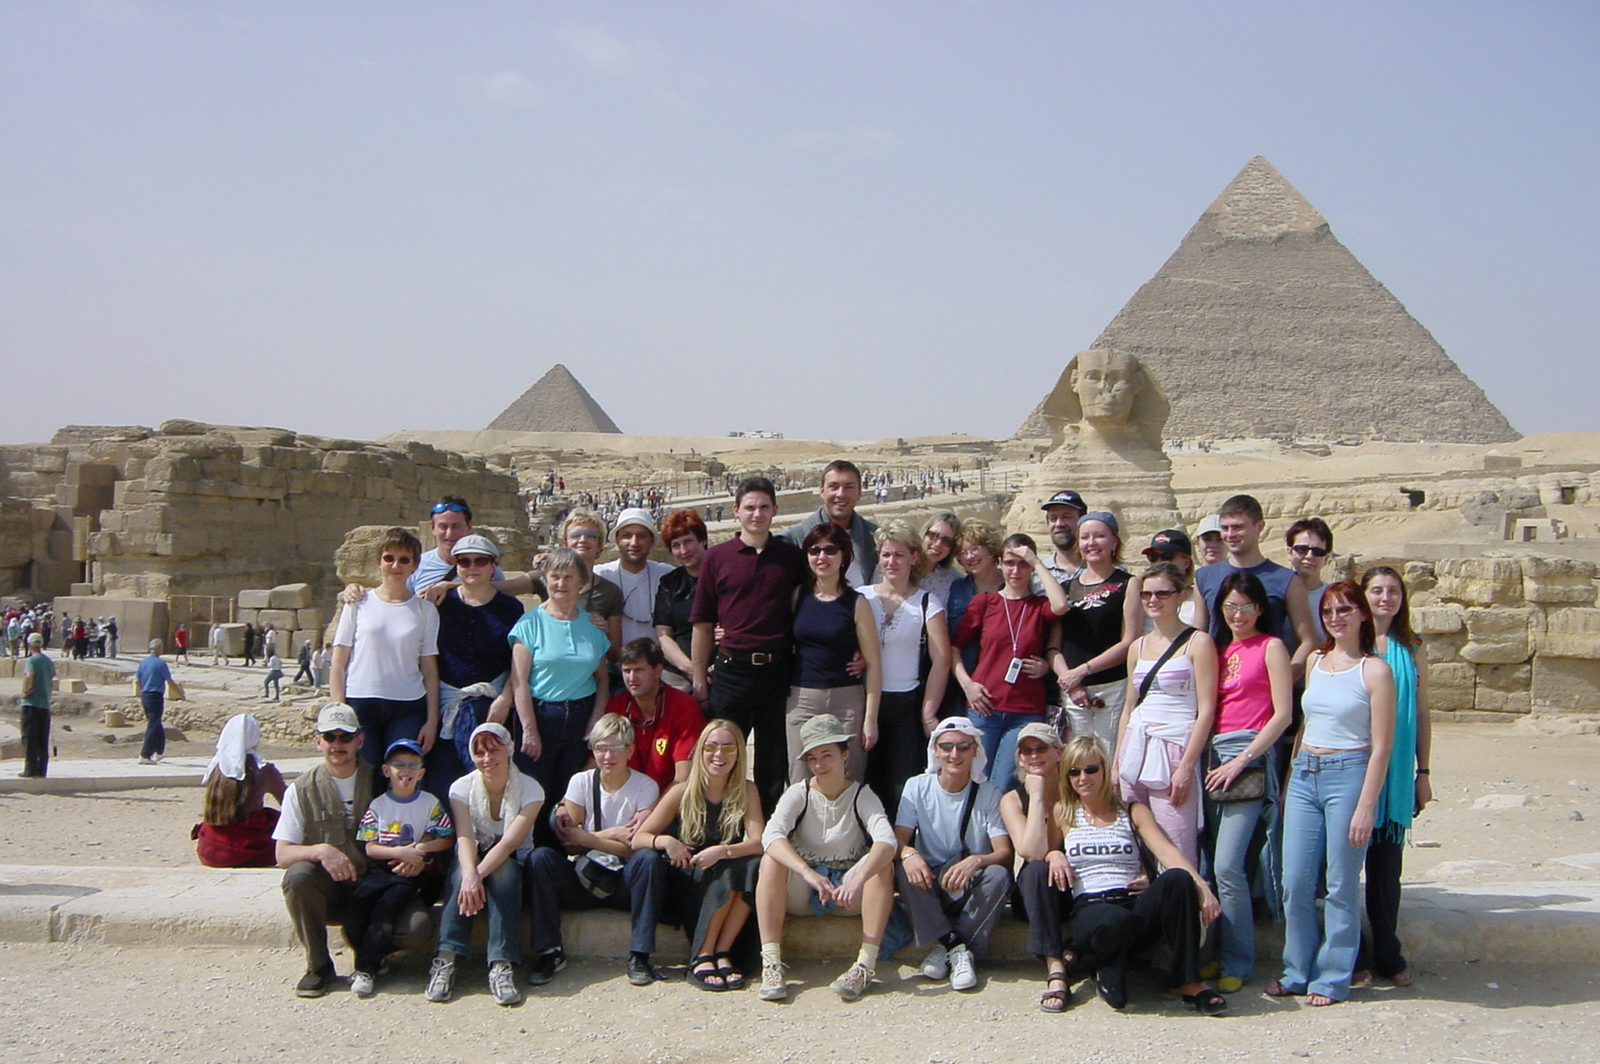 
Ai piedi delle grandi piramidi, Il Cairo
